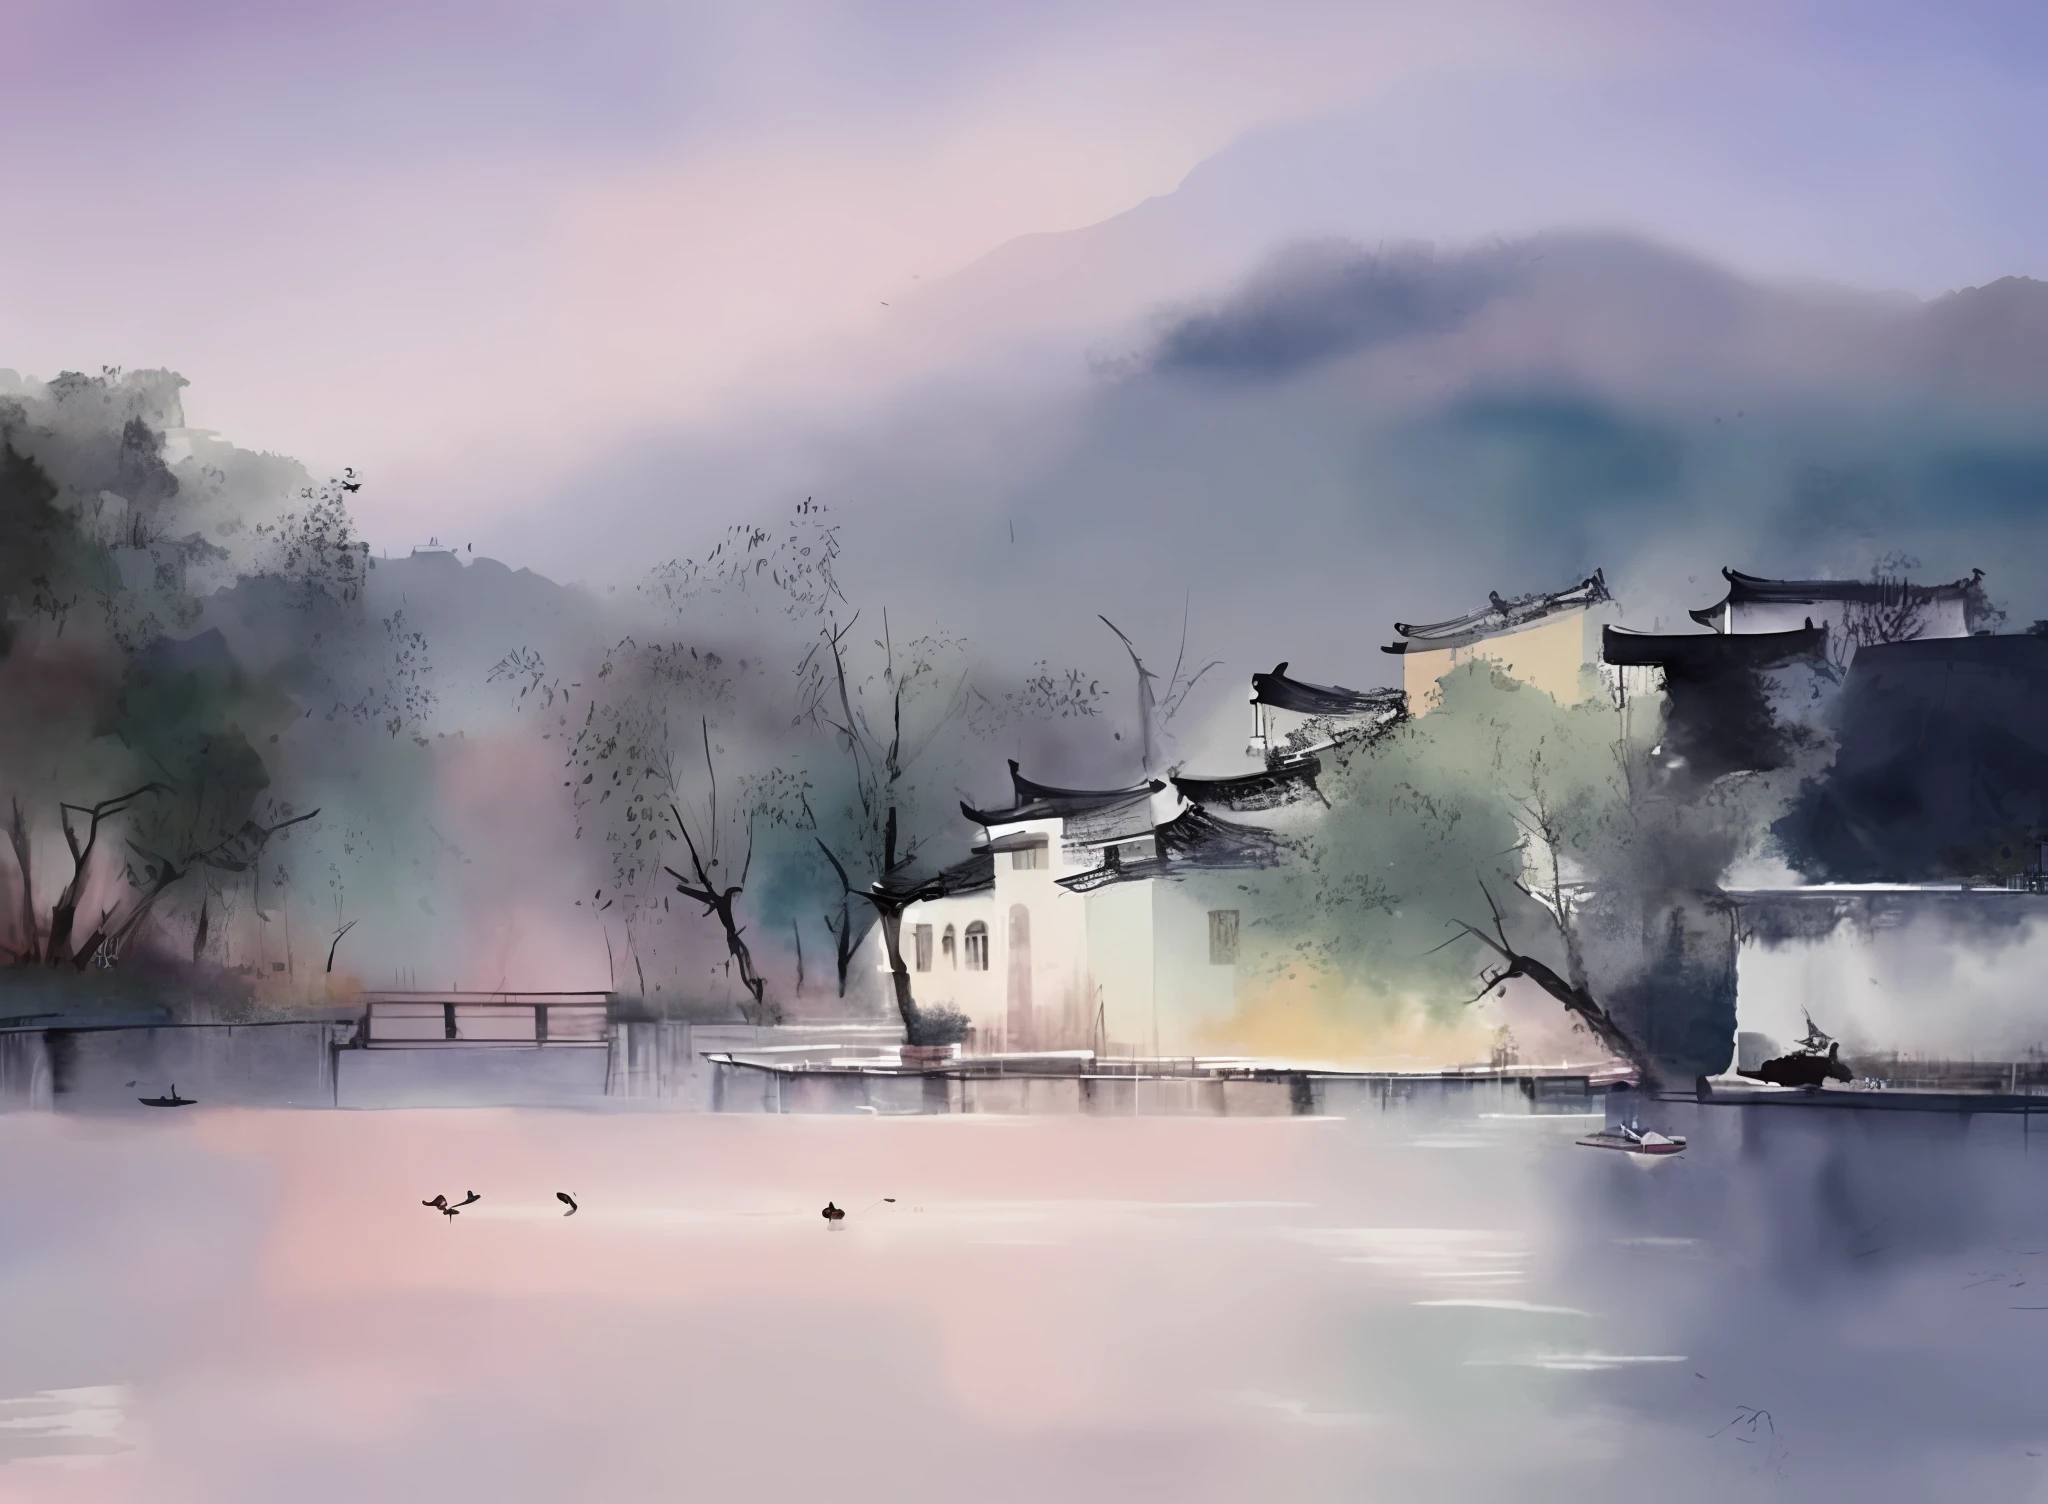 акварельная живопись, Архитектура Цзяннань, сельская местность, вода озера, утки, Туманный туман, мечтательные цвета,